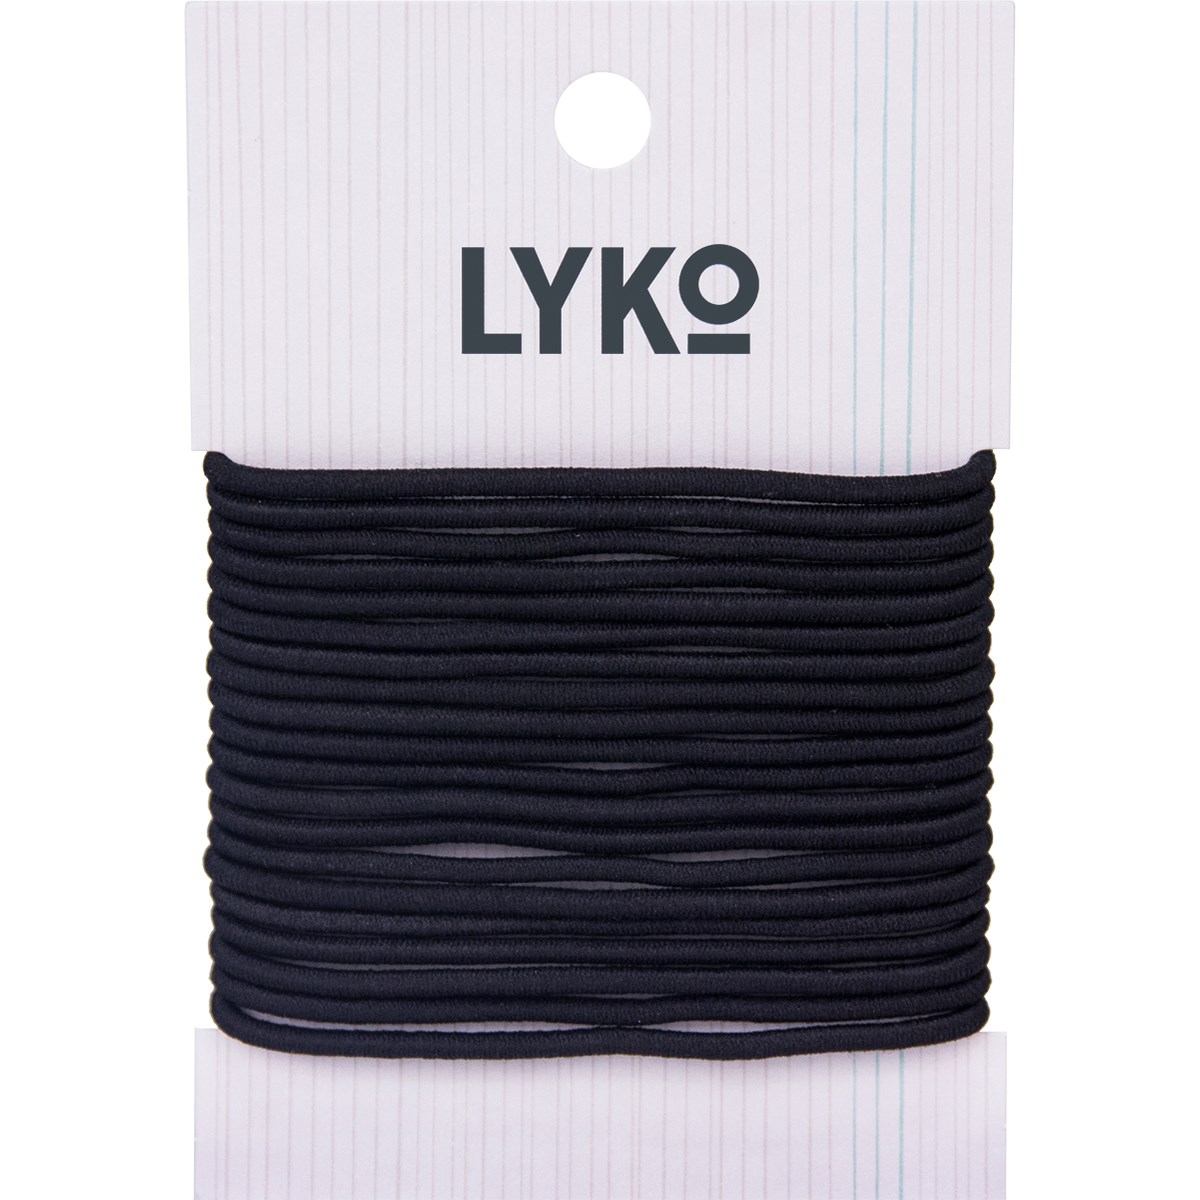 By Lyko Hair Tie 20-Pack Black